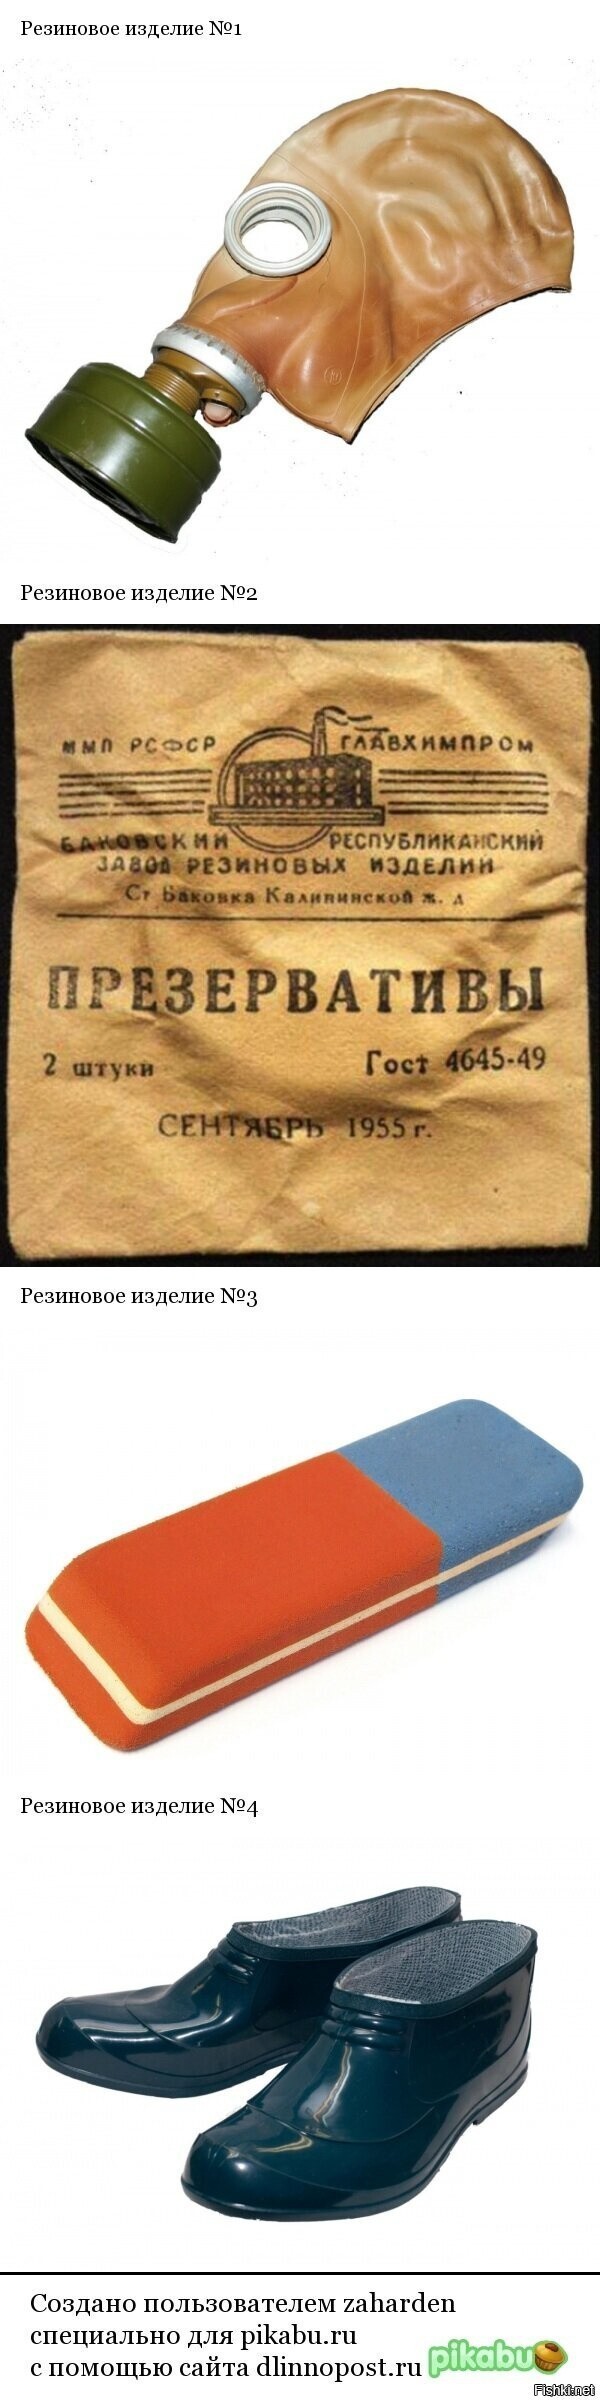 Номера резиновых изделий в СССР